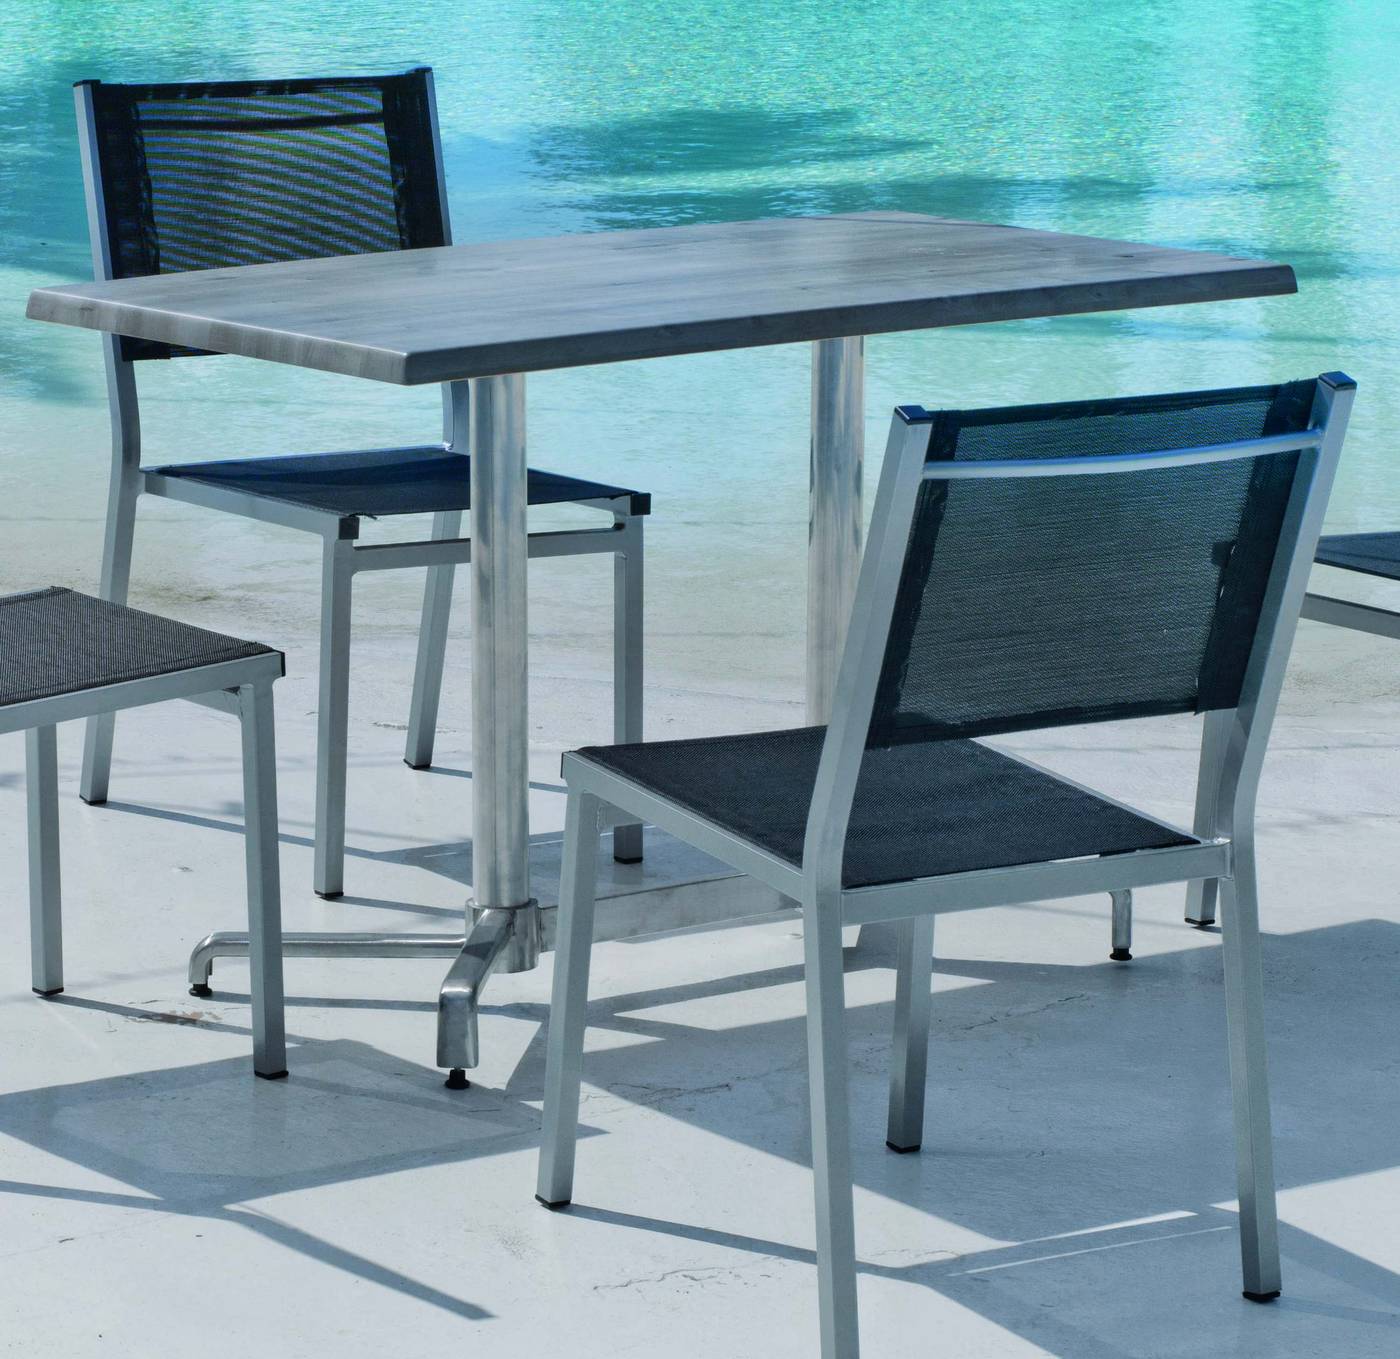 Set Aluminio Lieja/Sion-120/4 - Conjunto aluminio: mesa rectangular de 120 cm. con tablero de heverzaplus y 4 sillas de aluminio color plata y textilen color gris